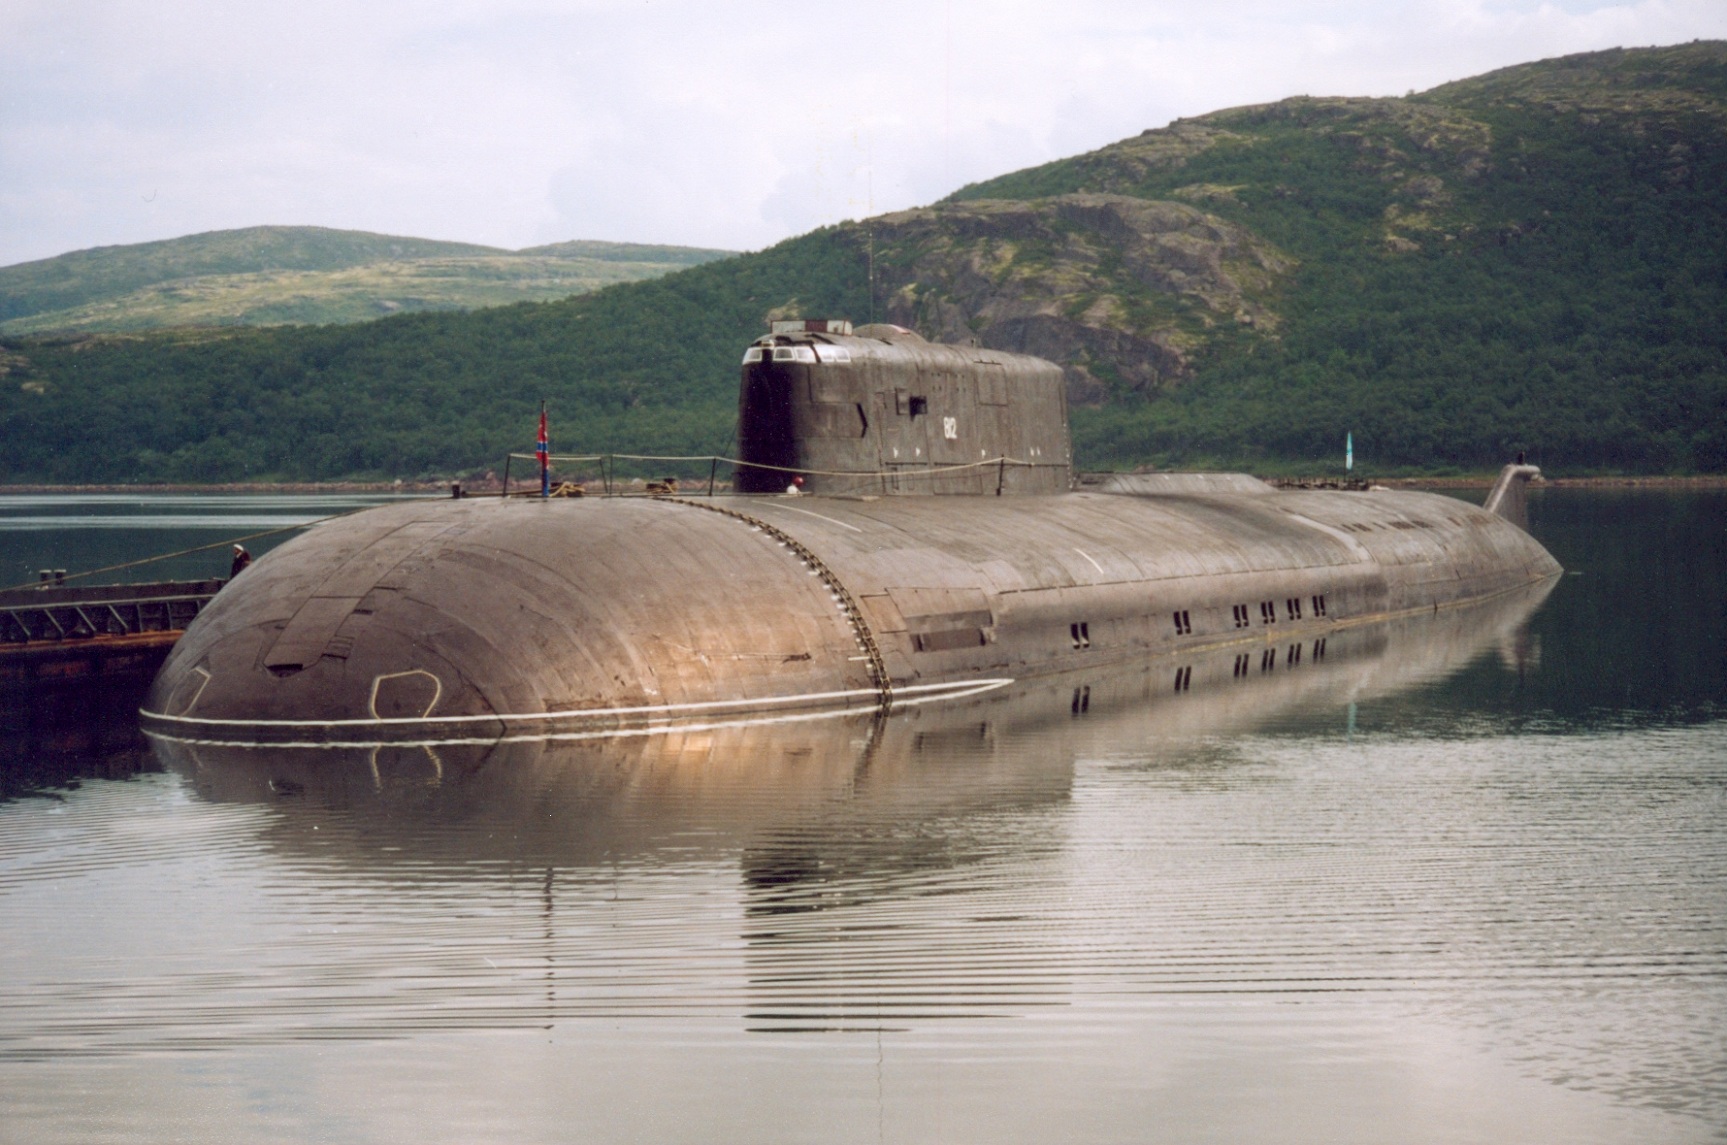 Пл пр т. АПЛ 949а Антей. Подводная лодка Тверь 949 Антей. Подводные лодки проекта 949а «Антей» Курск. 949 А подводная лодка Воронеж.